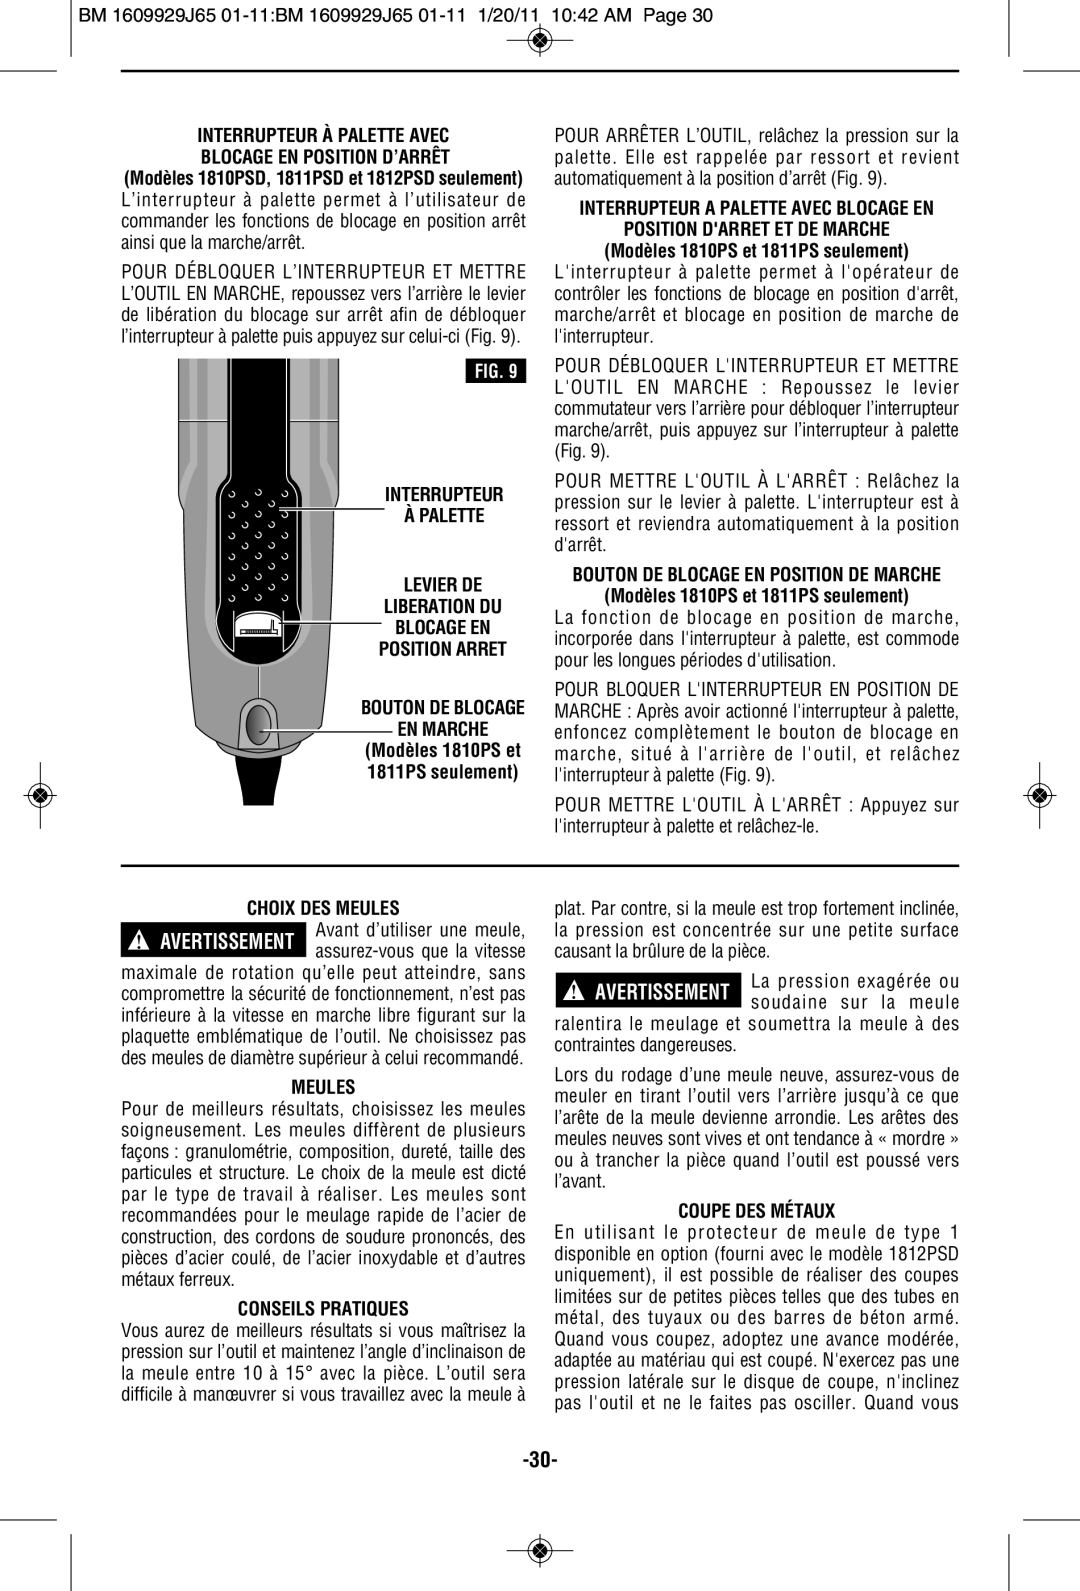 Bosch Power Tools 1811PSD Interrupteur À Palette Avec, Interrupteur À Palette Levier De Liberation Du Blocage En, Meules 